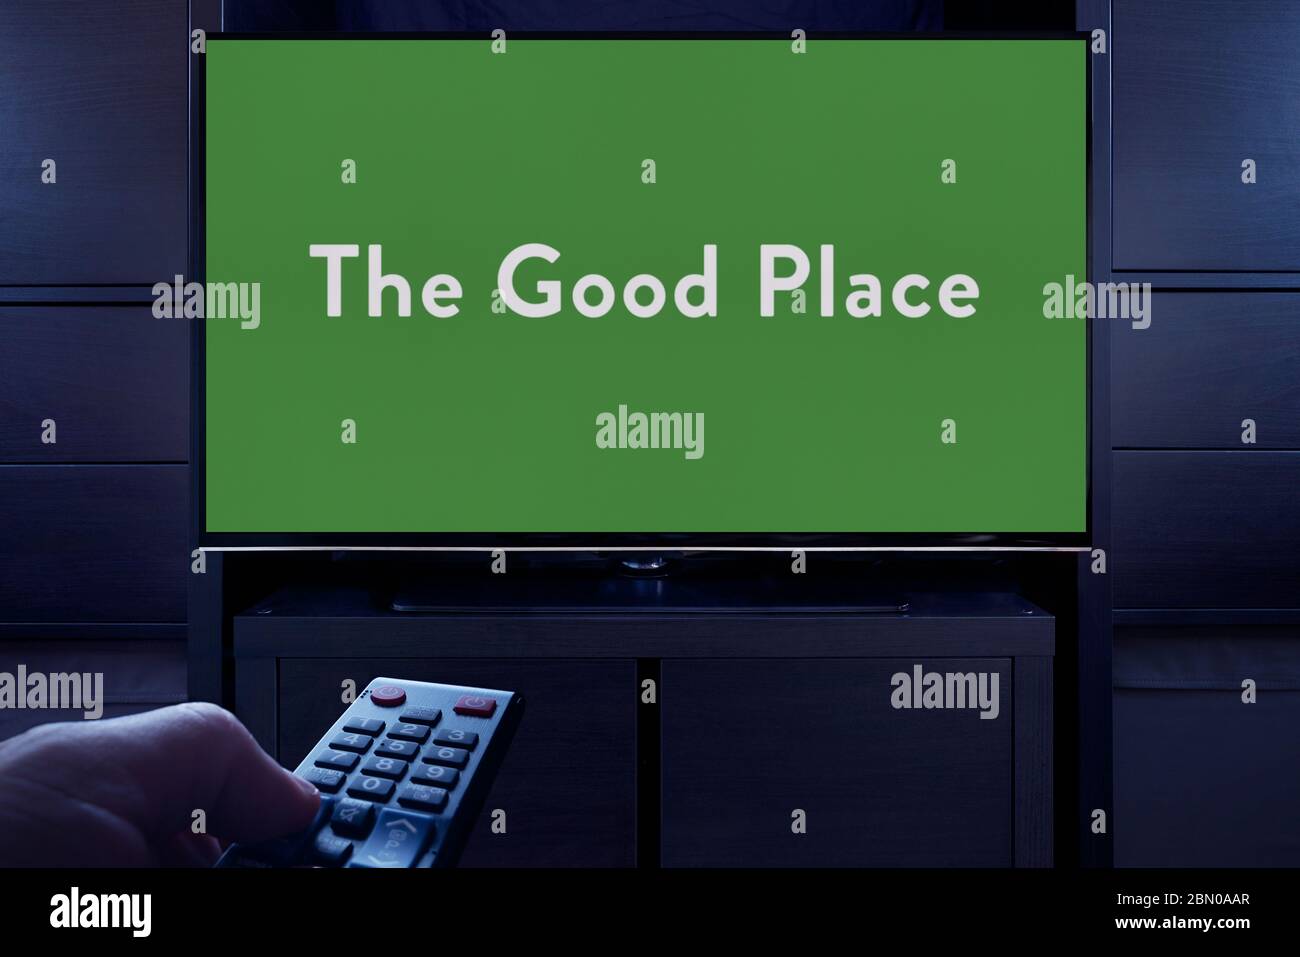 Un homme pointe une télécommande vers le téléviseur qui affiche l'écran principal de titre « The Good place » (usage éditorial uniquement). Banque D'Images